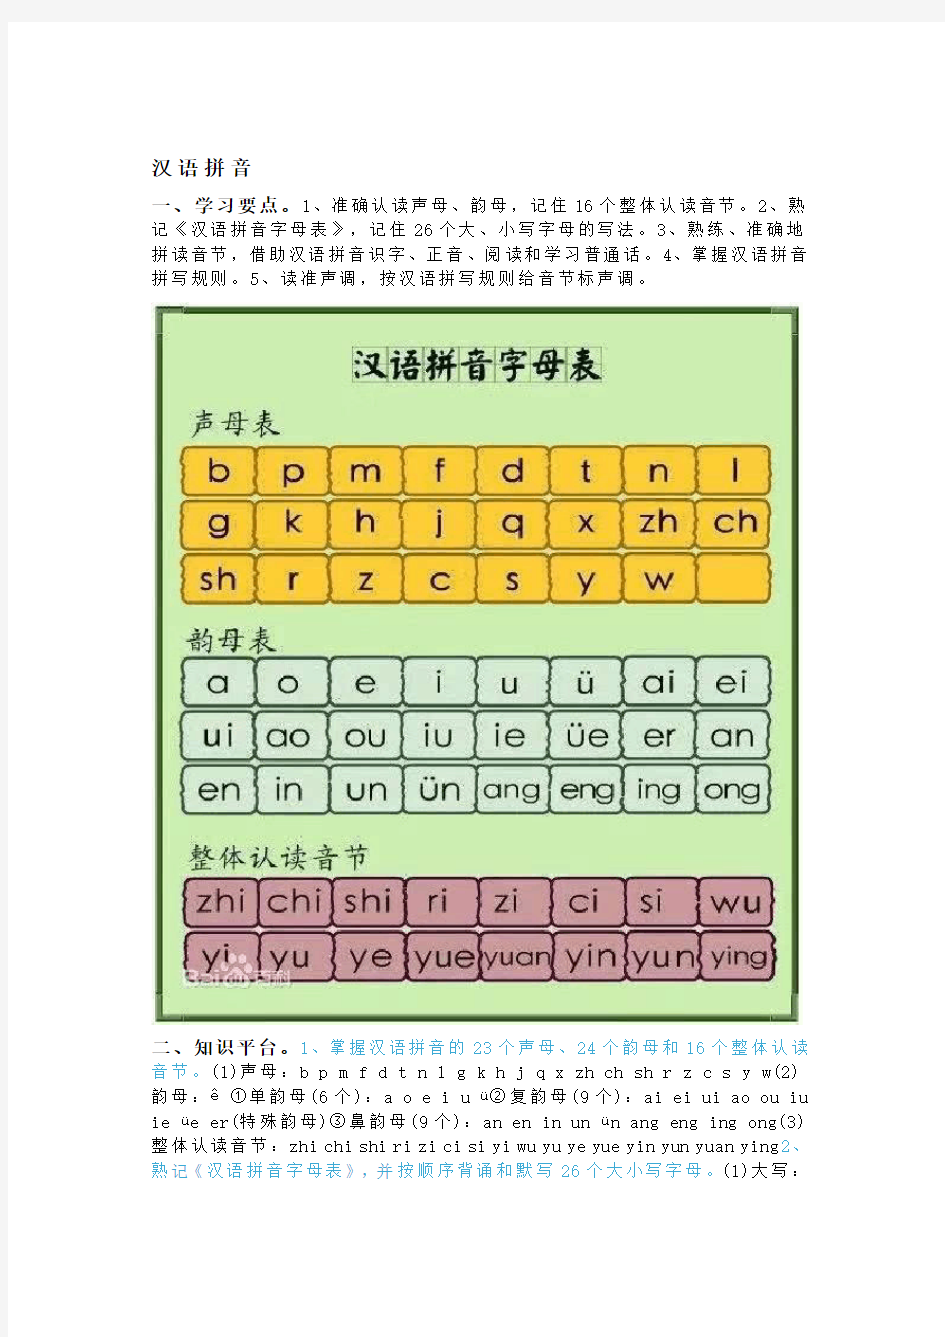 一年级语文大总结的汉语拼音、汉字、句子知识点!